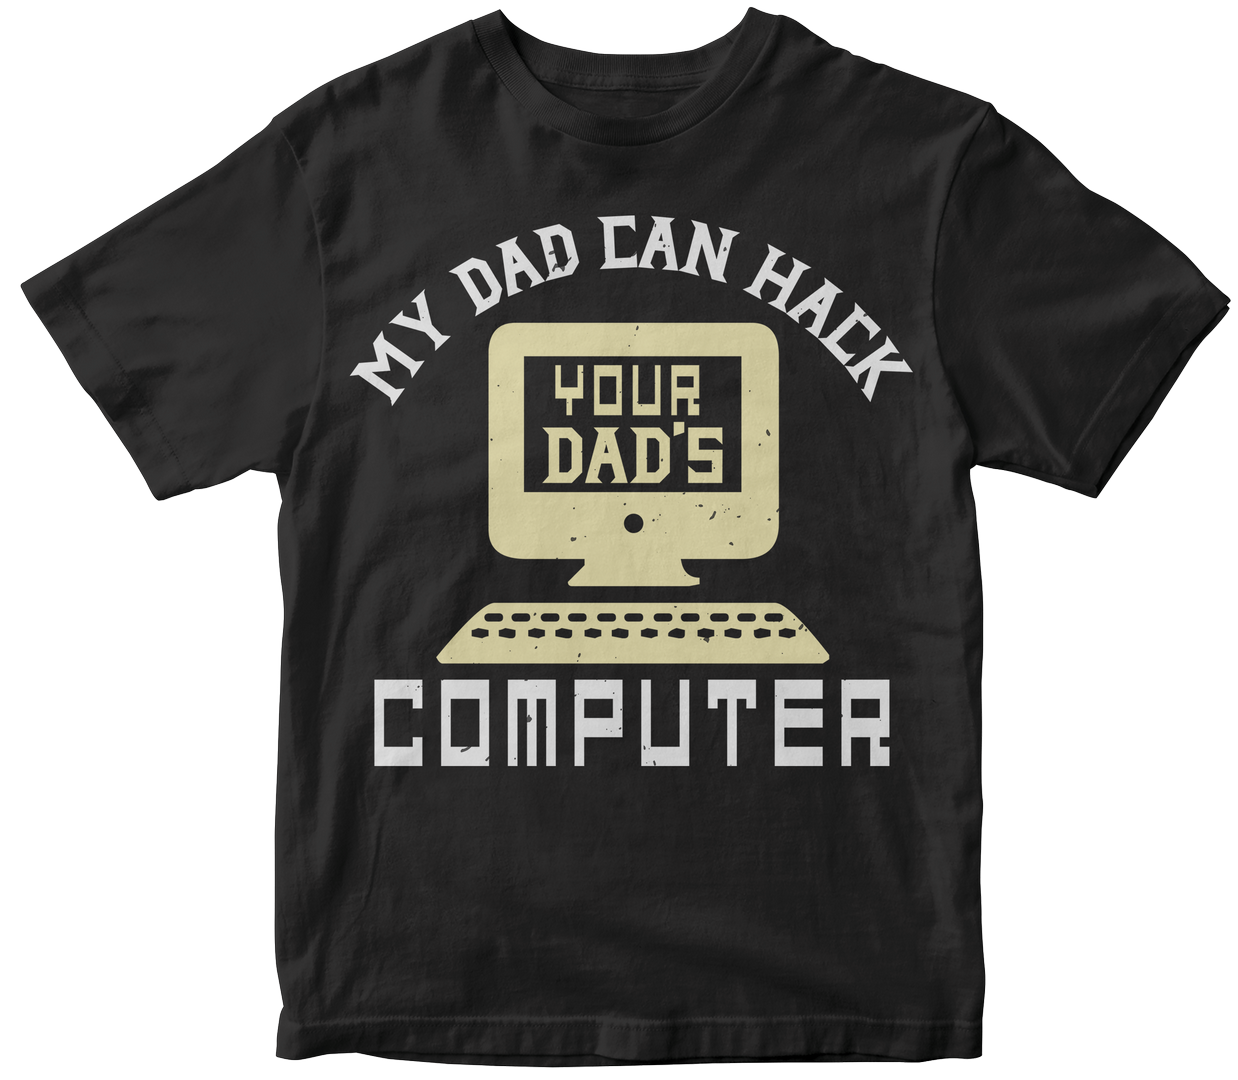 50-customizable-computer-t-shirt-design-bundle